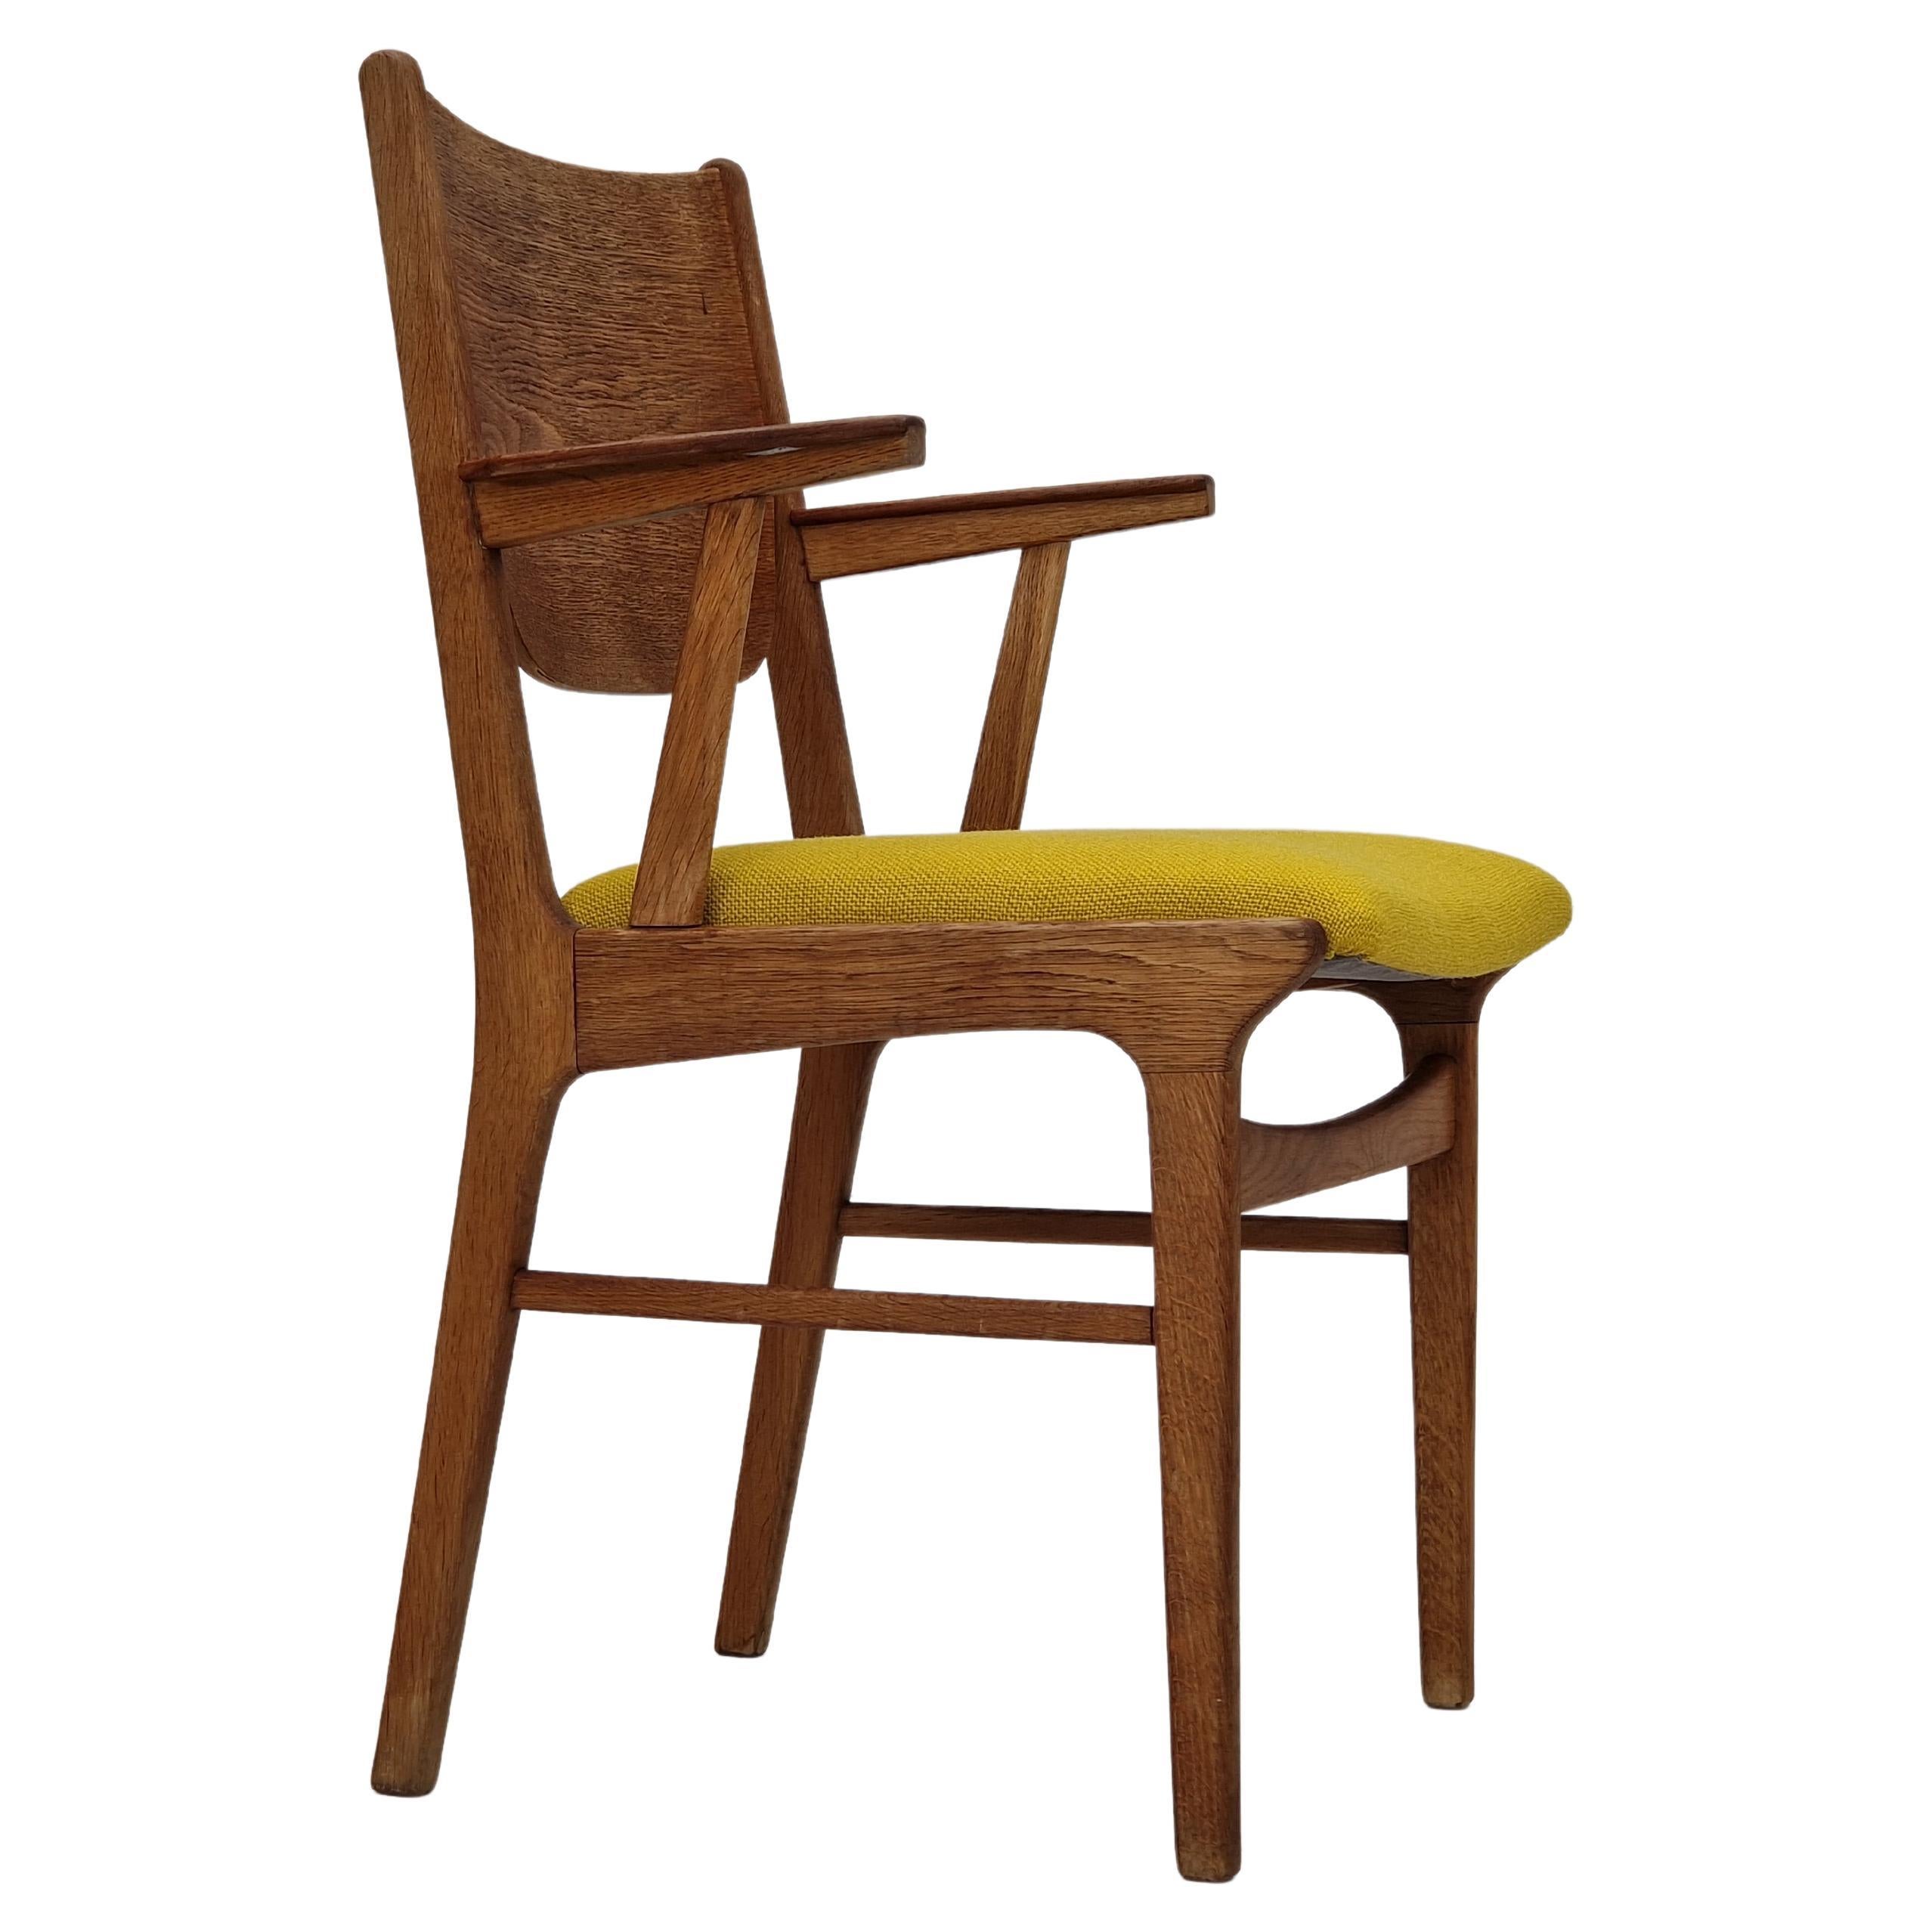 Dänischer Design, restaurierter Sessel aus den 1960er Jahren, Kvadrat-Wolle, Eichenholz.